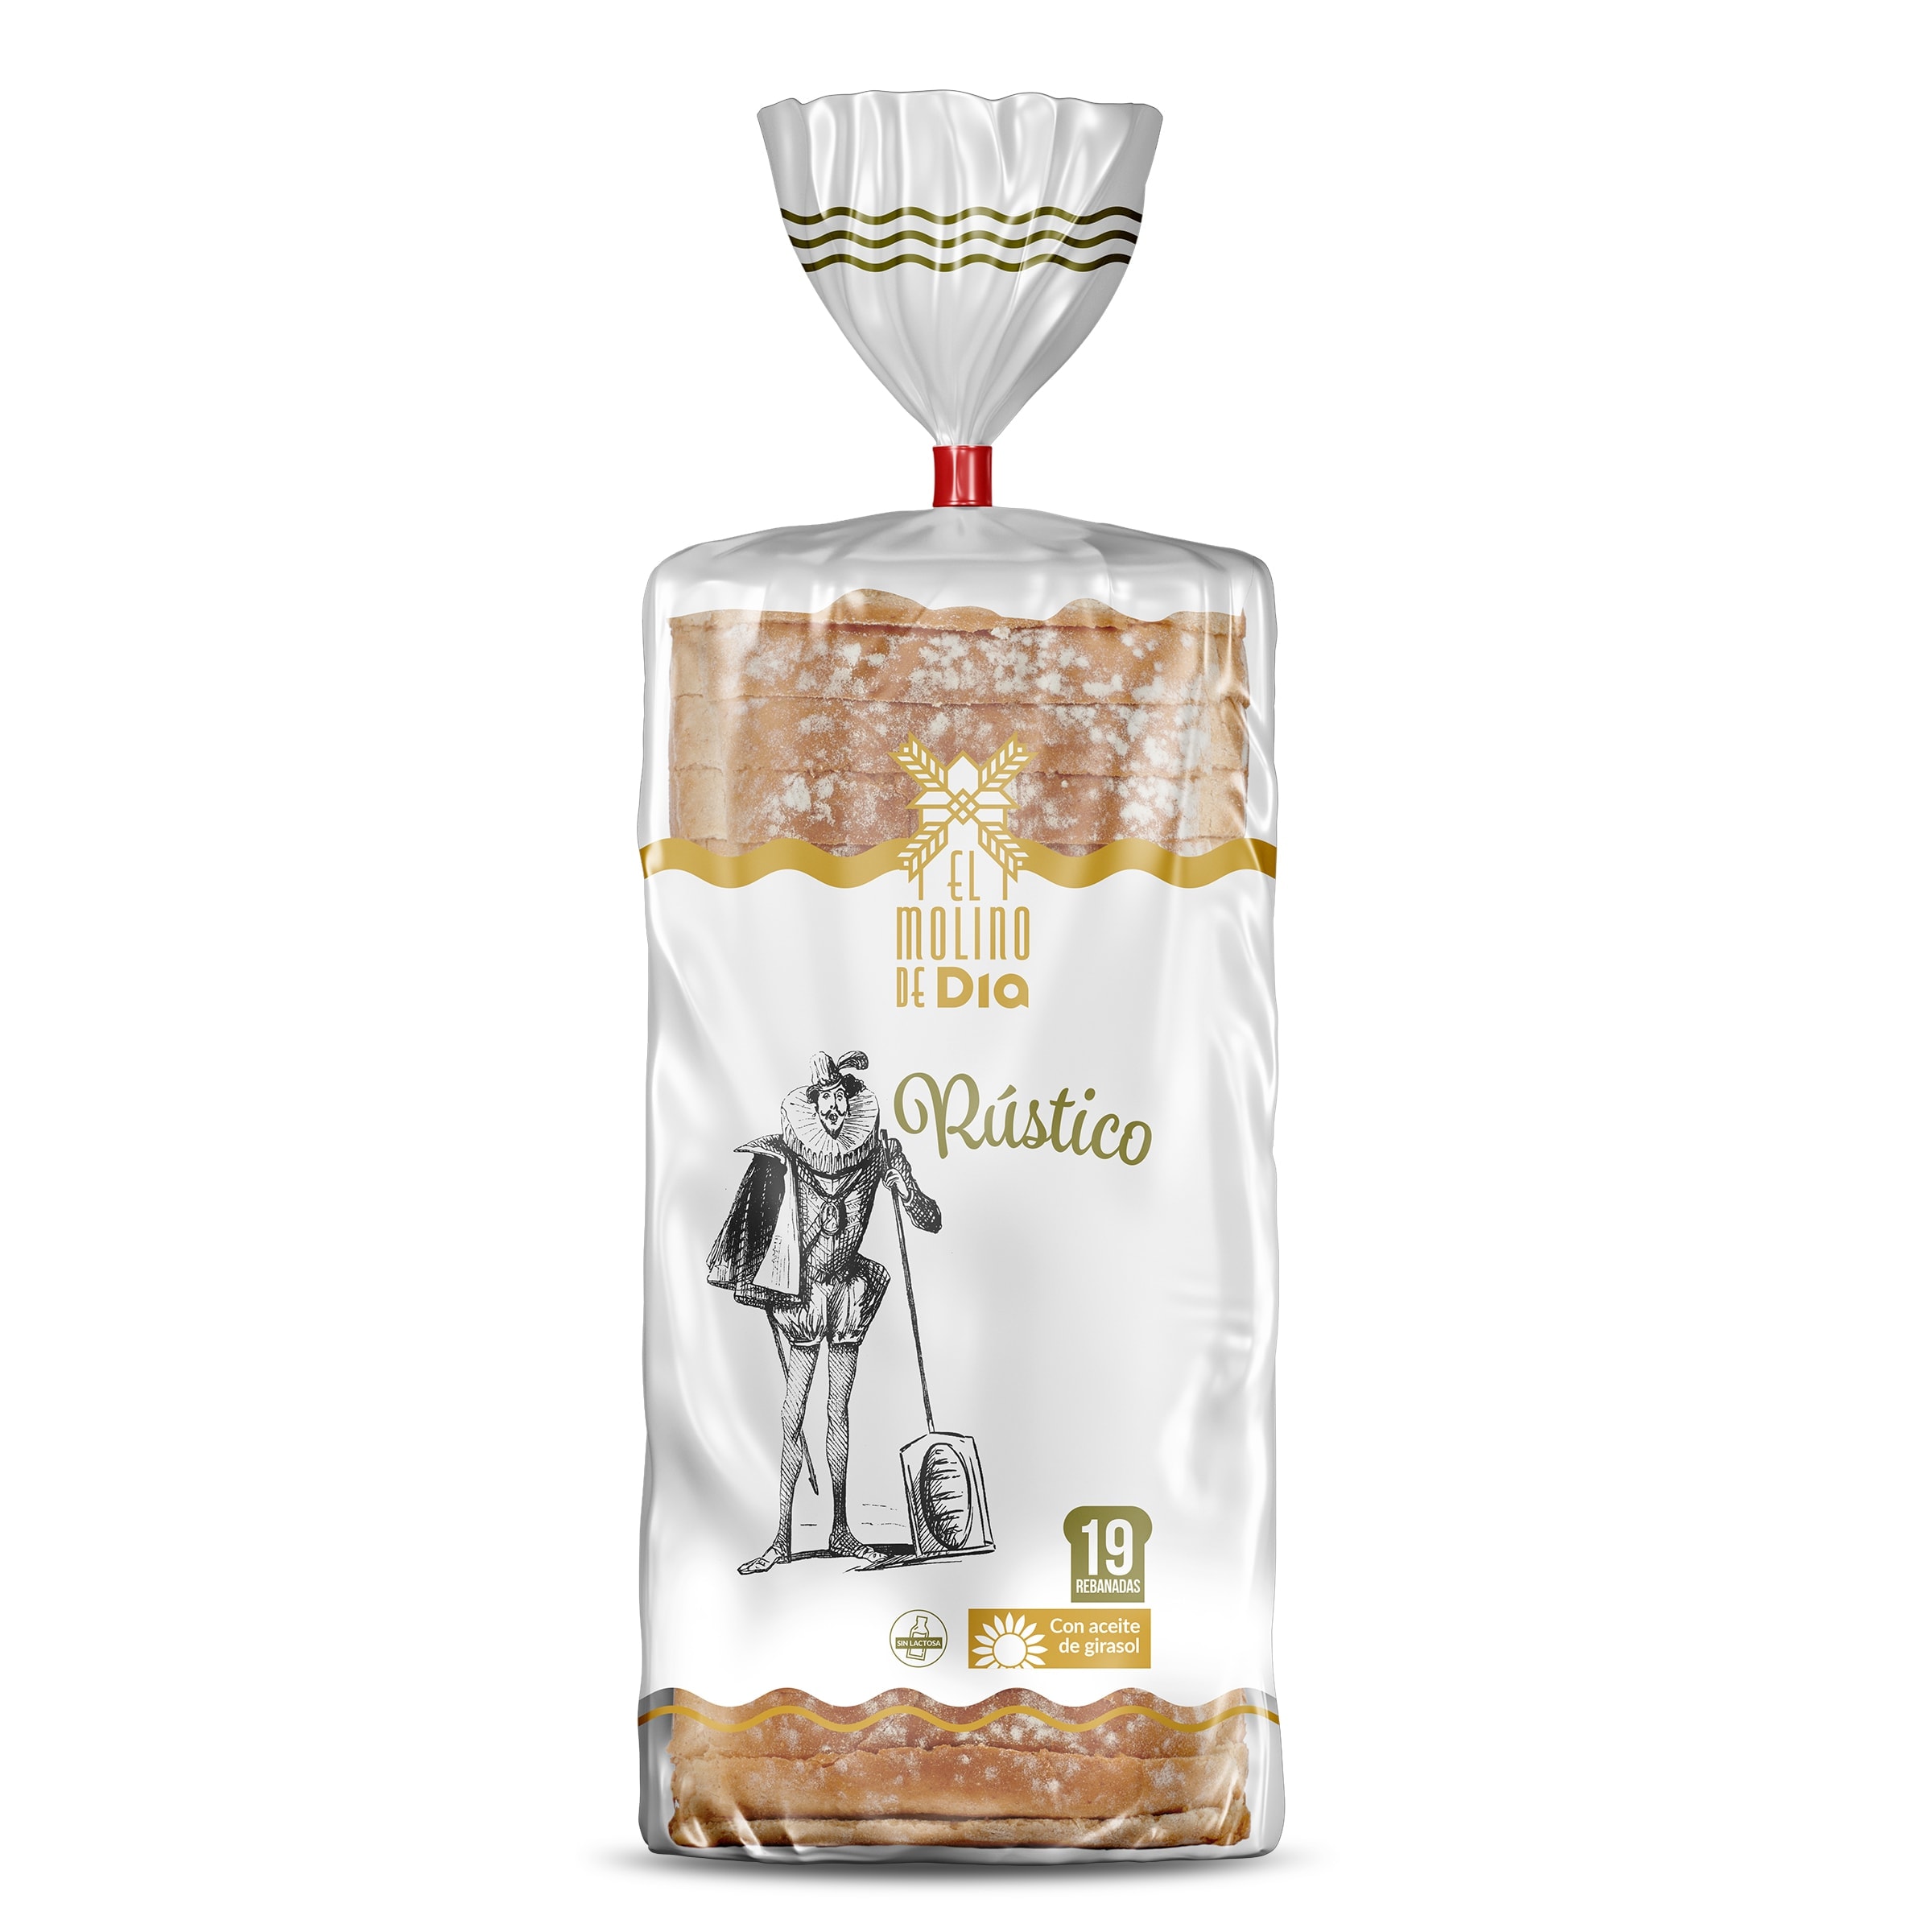 Pan de molde blanco grande Bimbo bolsa 375 g - Supermercados DIA